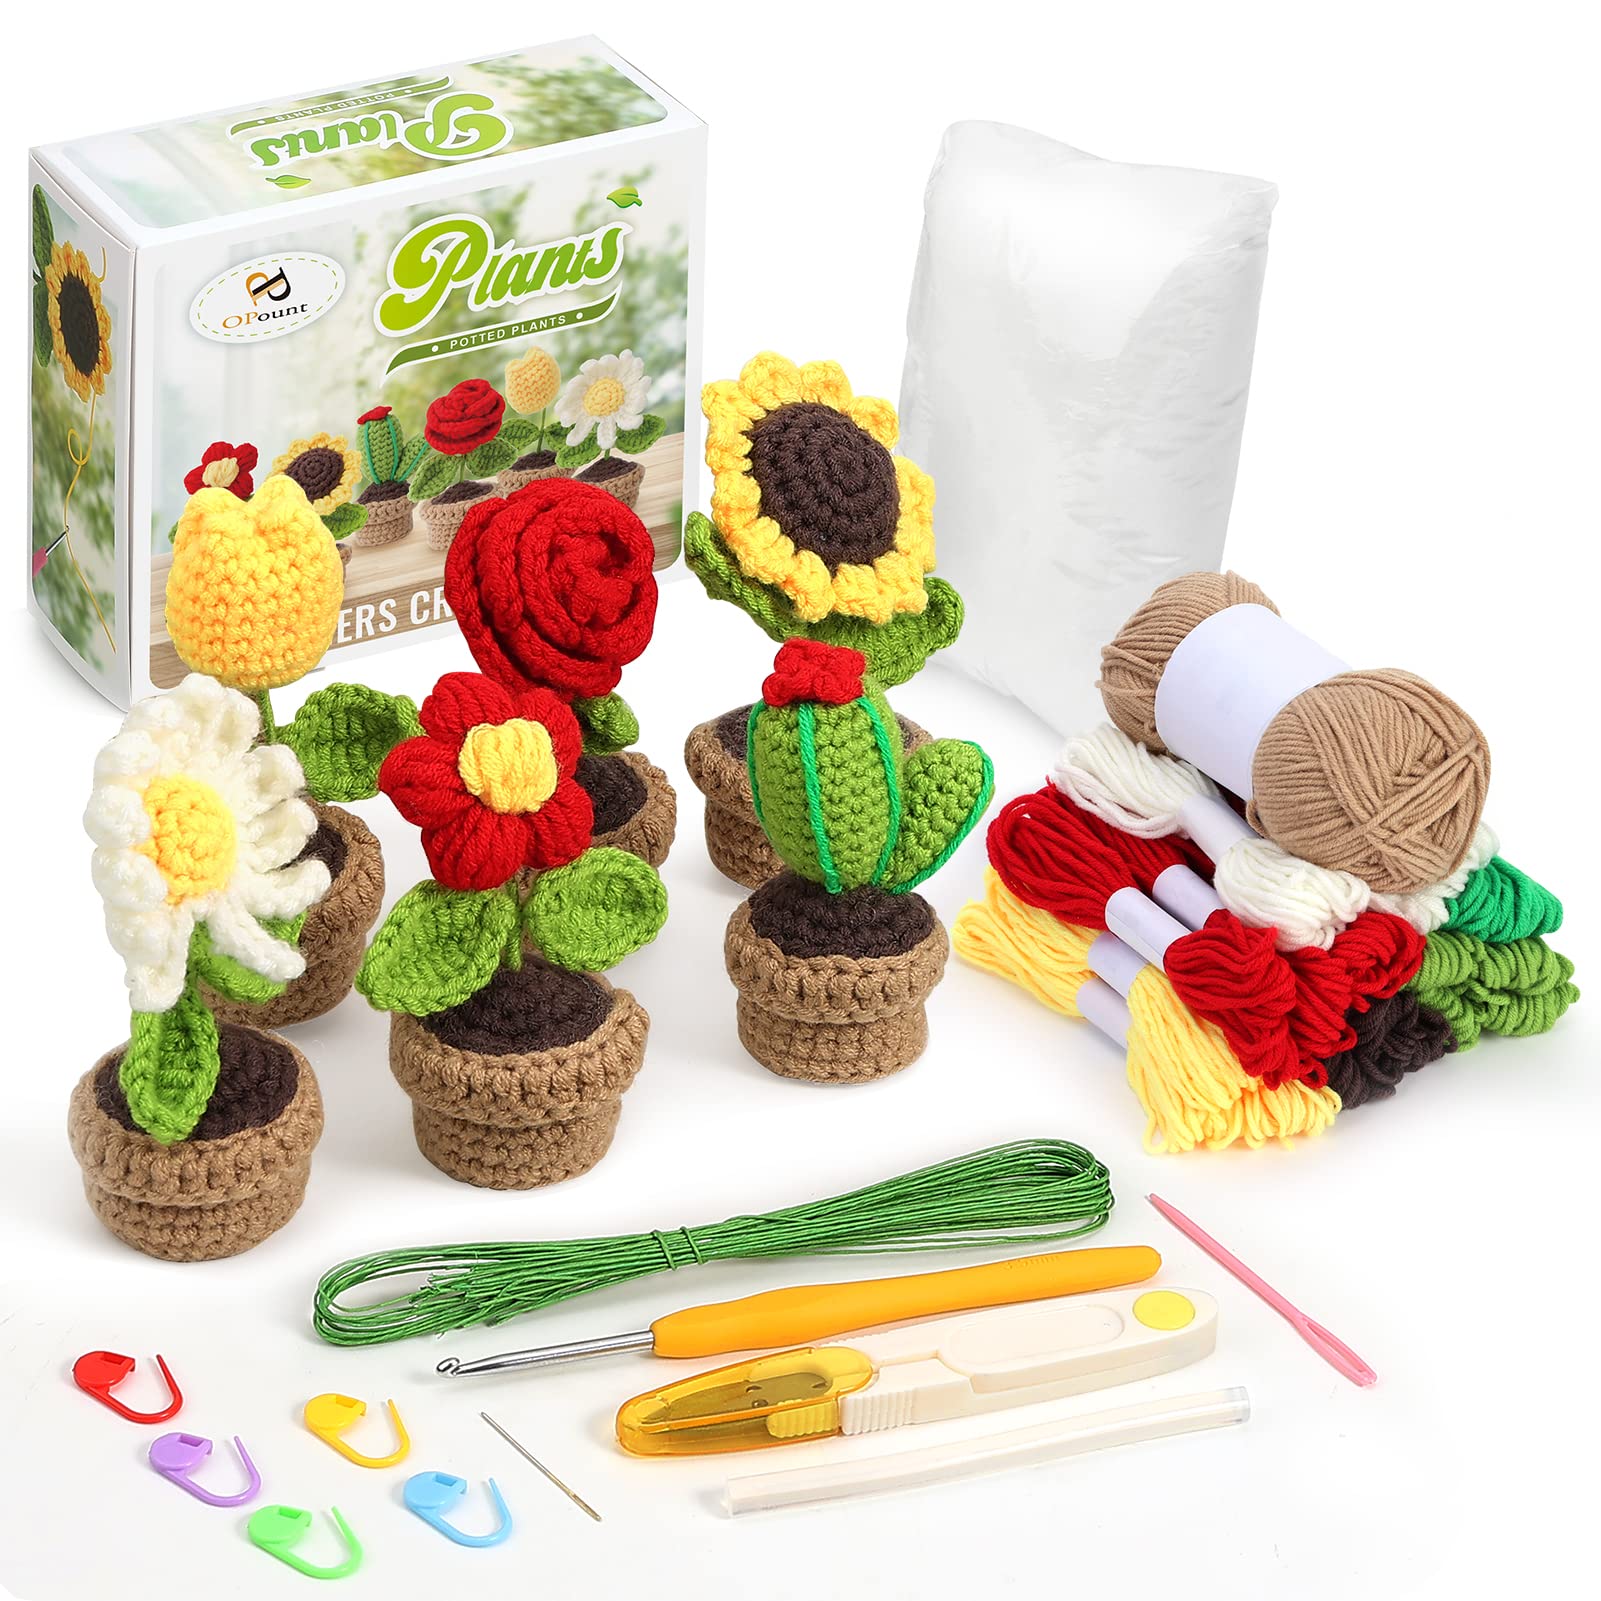  Crochetobe Crochet Kit for Beginners - 6 PCS Crochet